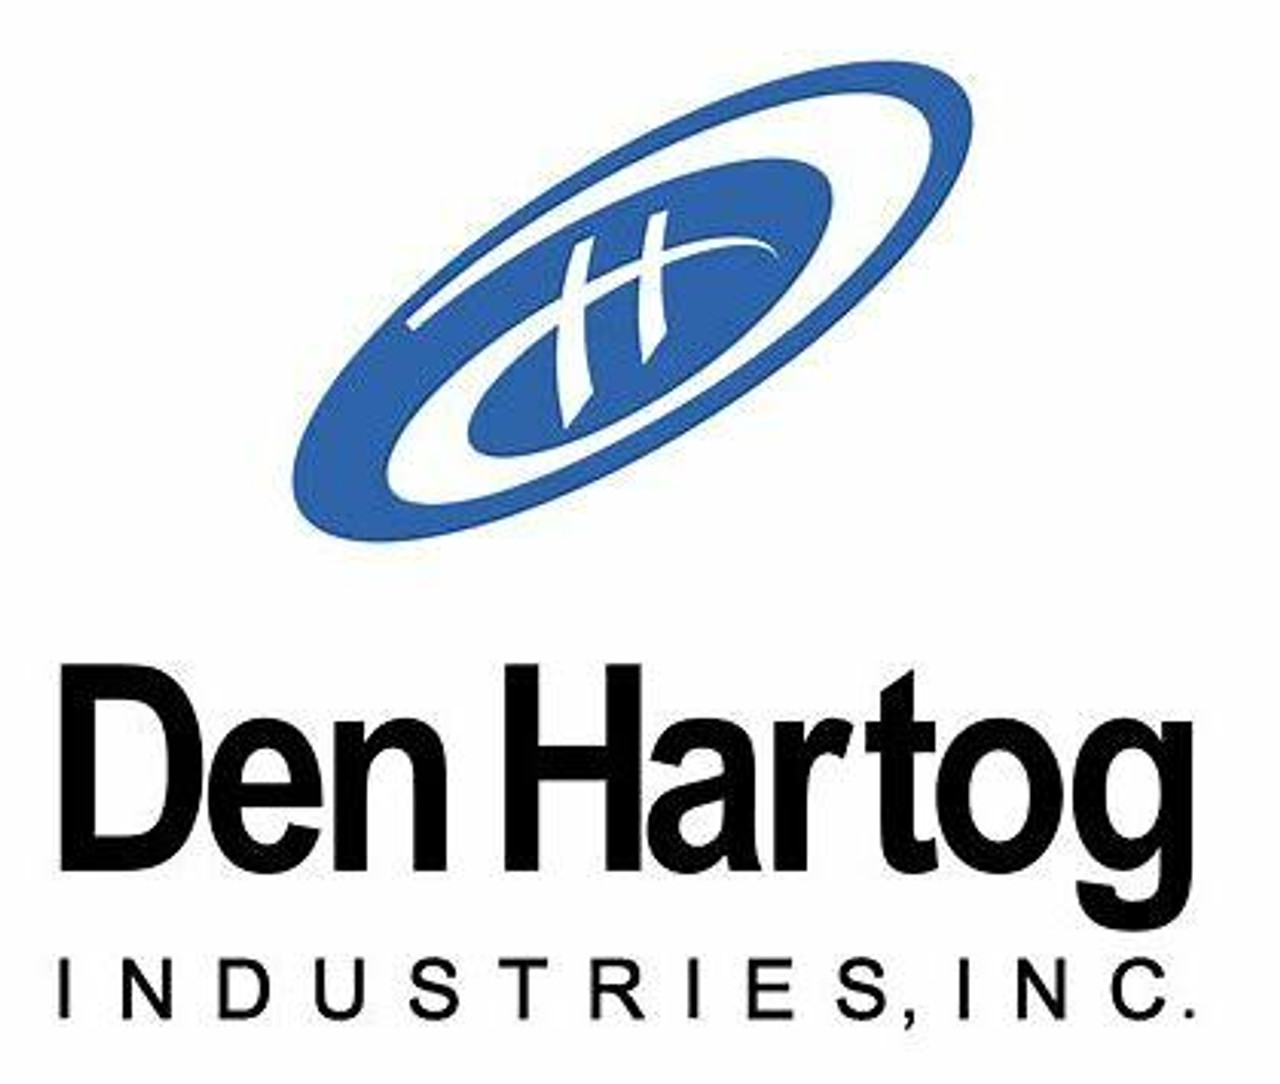 Den Hartog Industries Inc